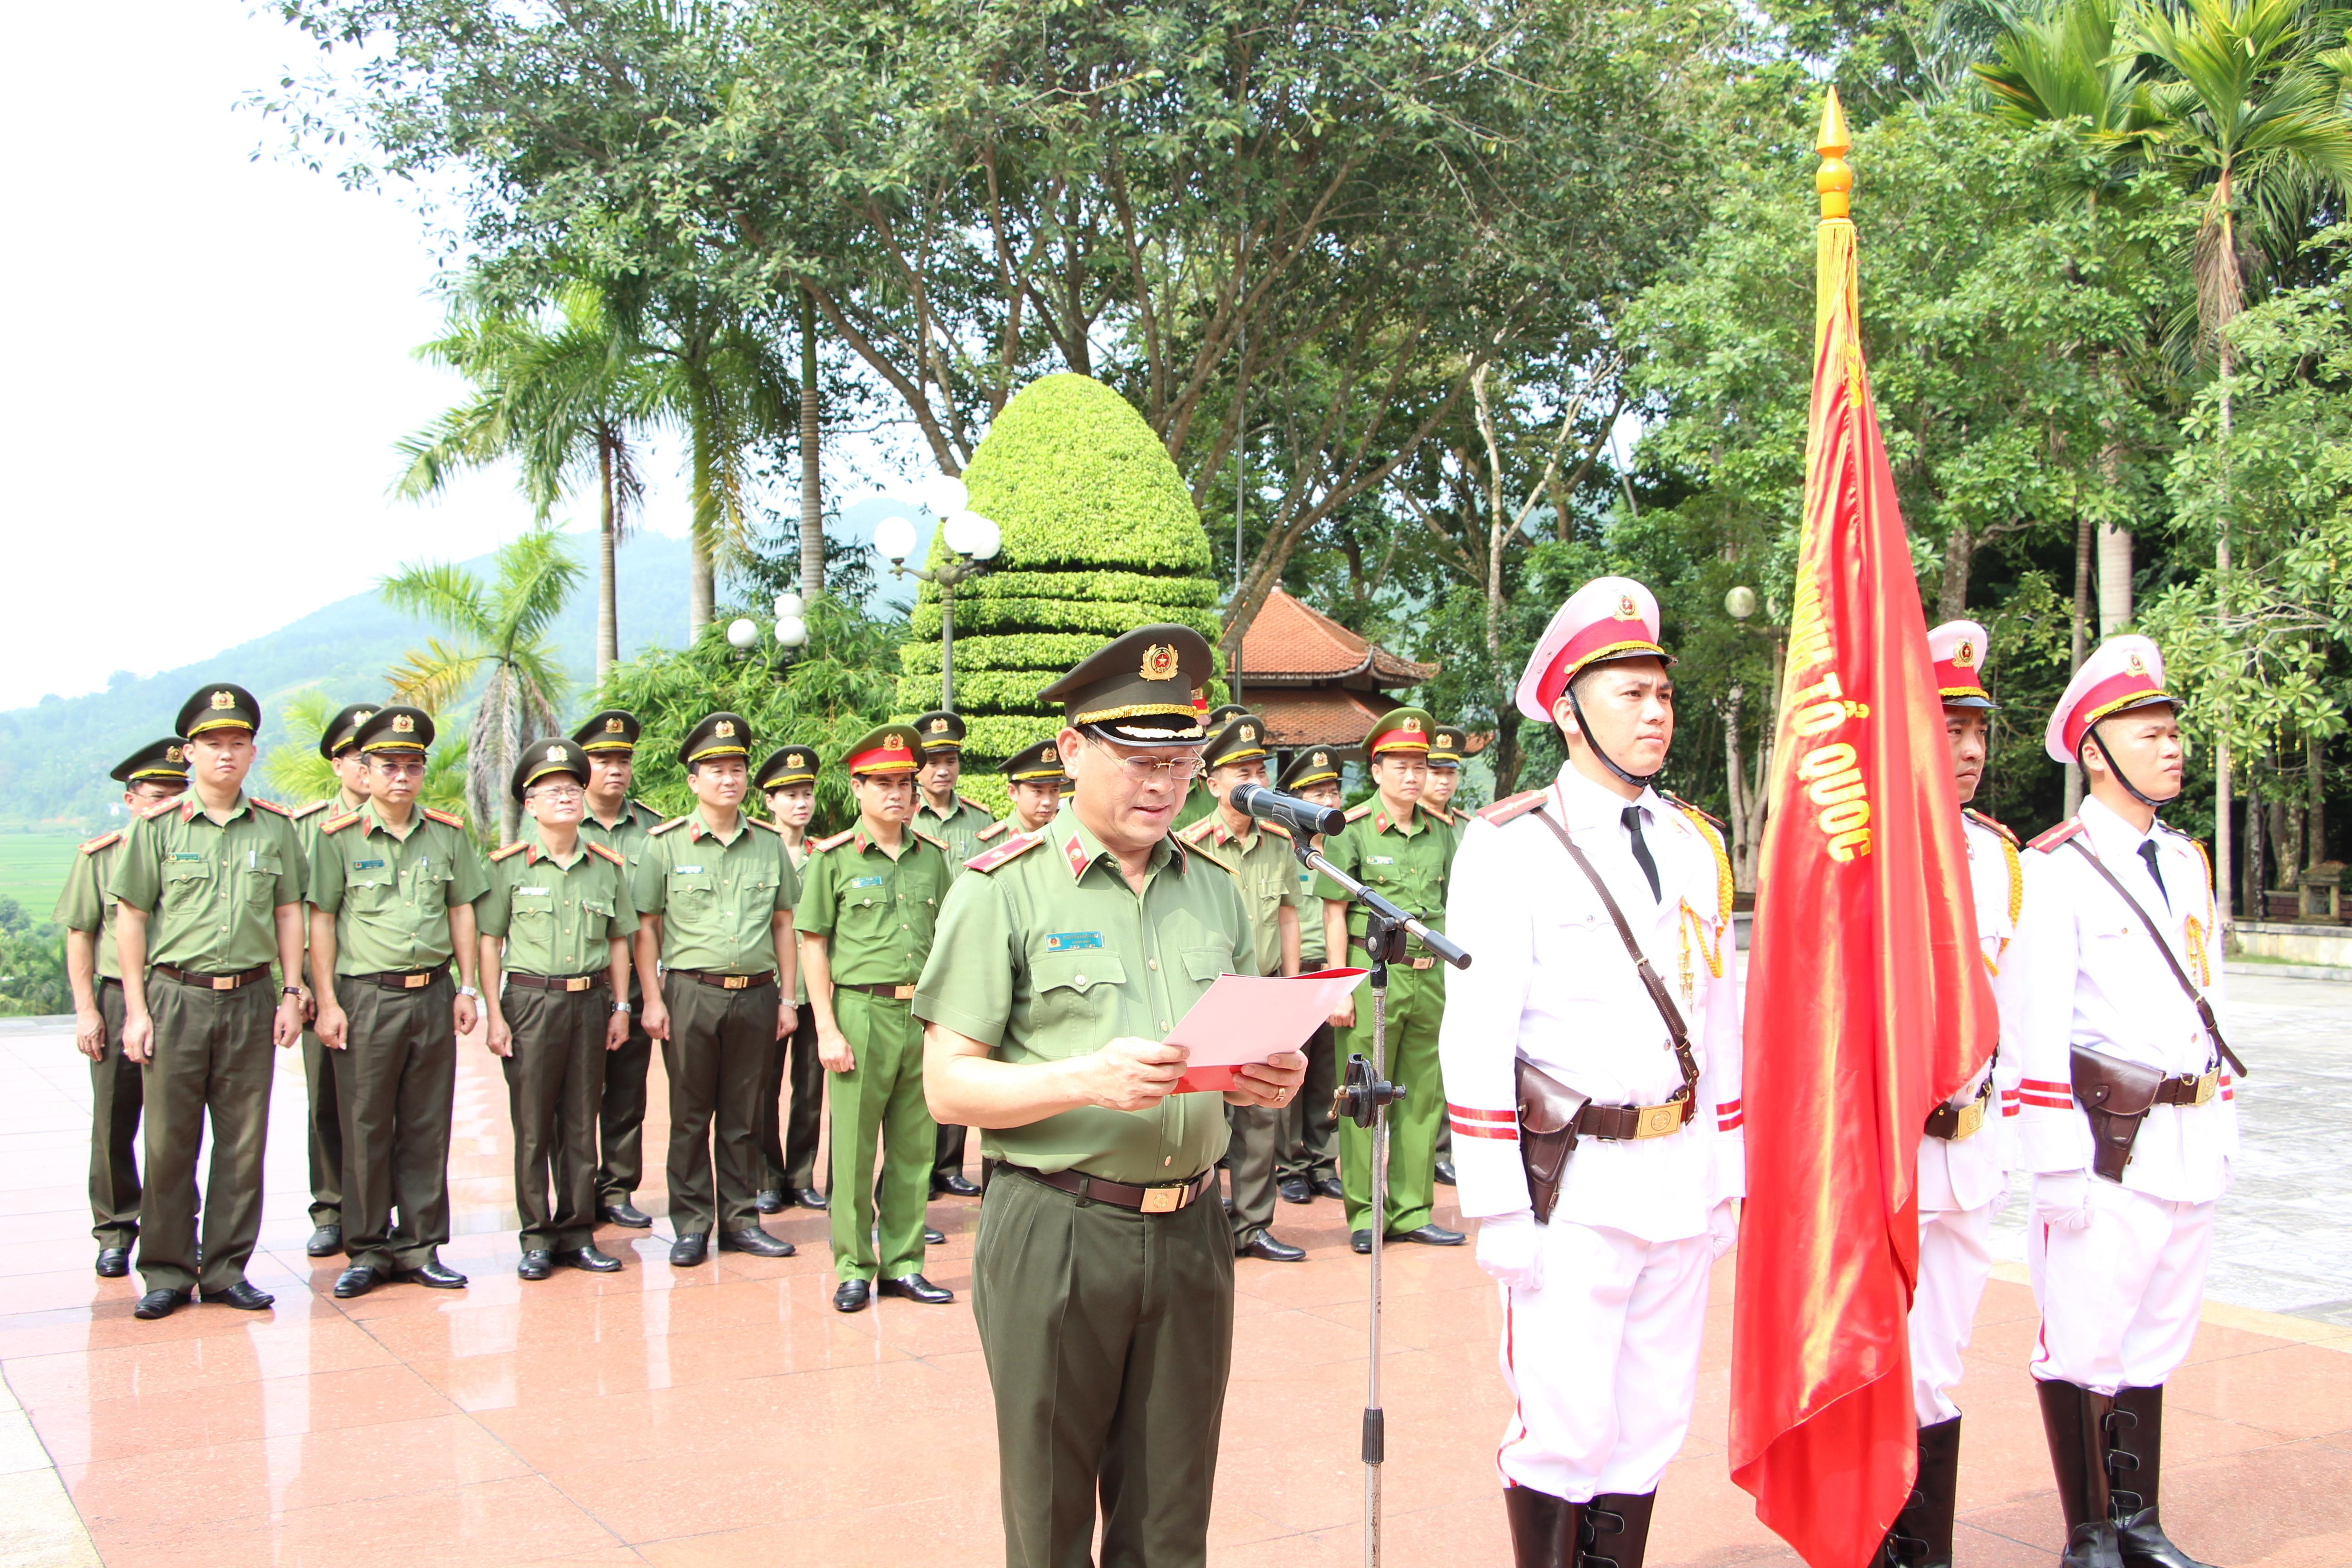 Thiếu tướng Nguyễn Hữu Cầu, Giám đốc Công an tỉnh Nghệ An dâng hương tưởng nhớ anh linh Chủ tịch Hồ Chí Minh và các liệt sỹ CAND tại khu di tích Nha Công an Trung ương.